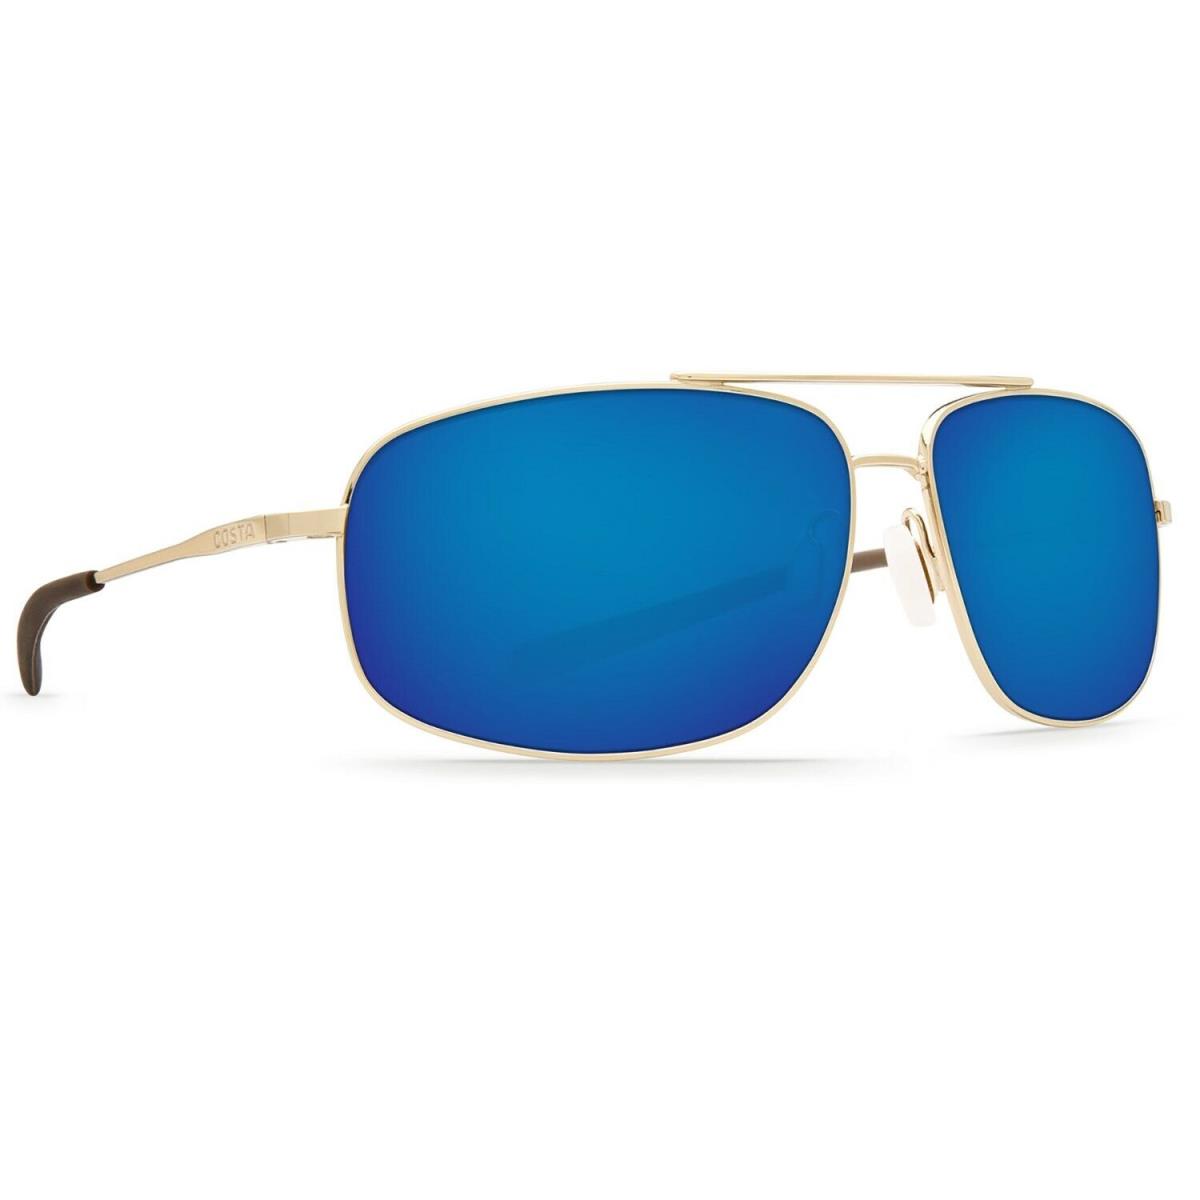 Costa Del Mar Shipmaster Sunglasses - Polarized